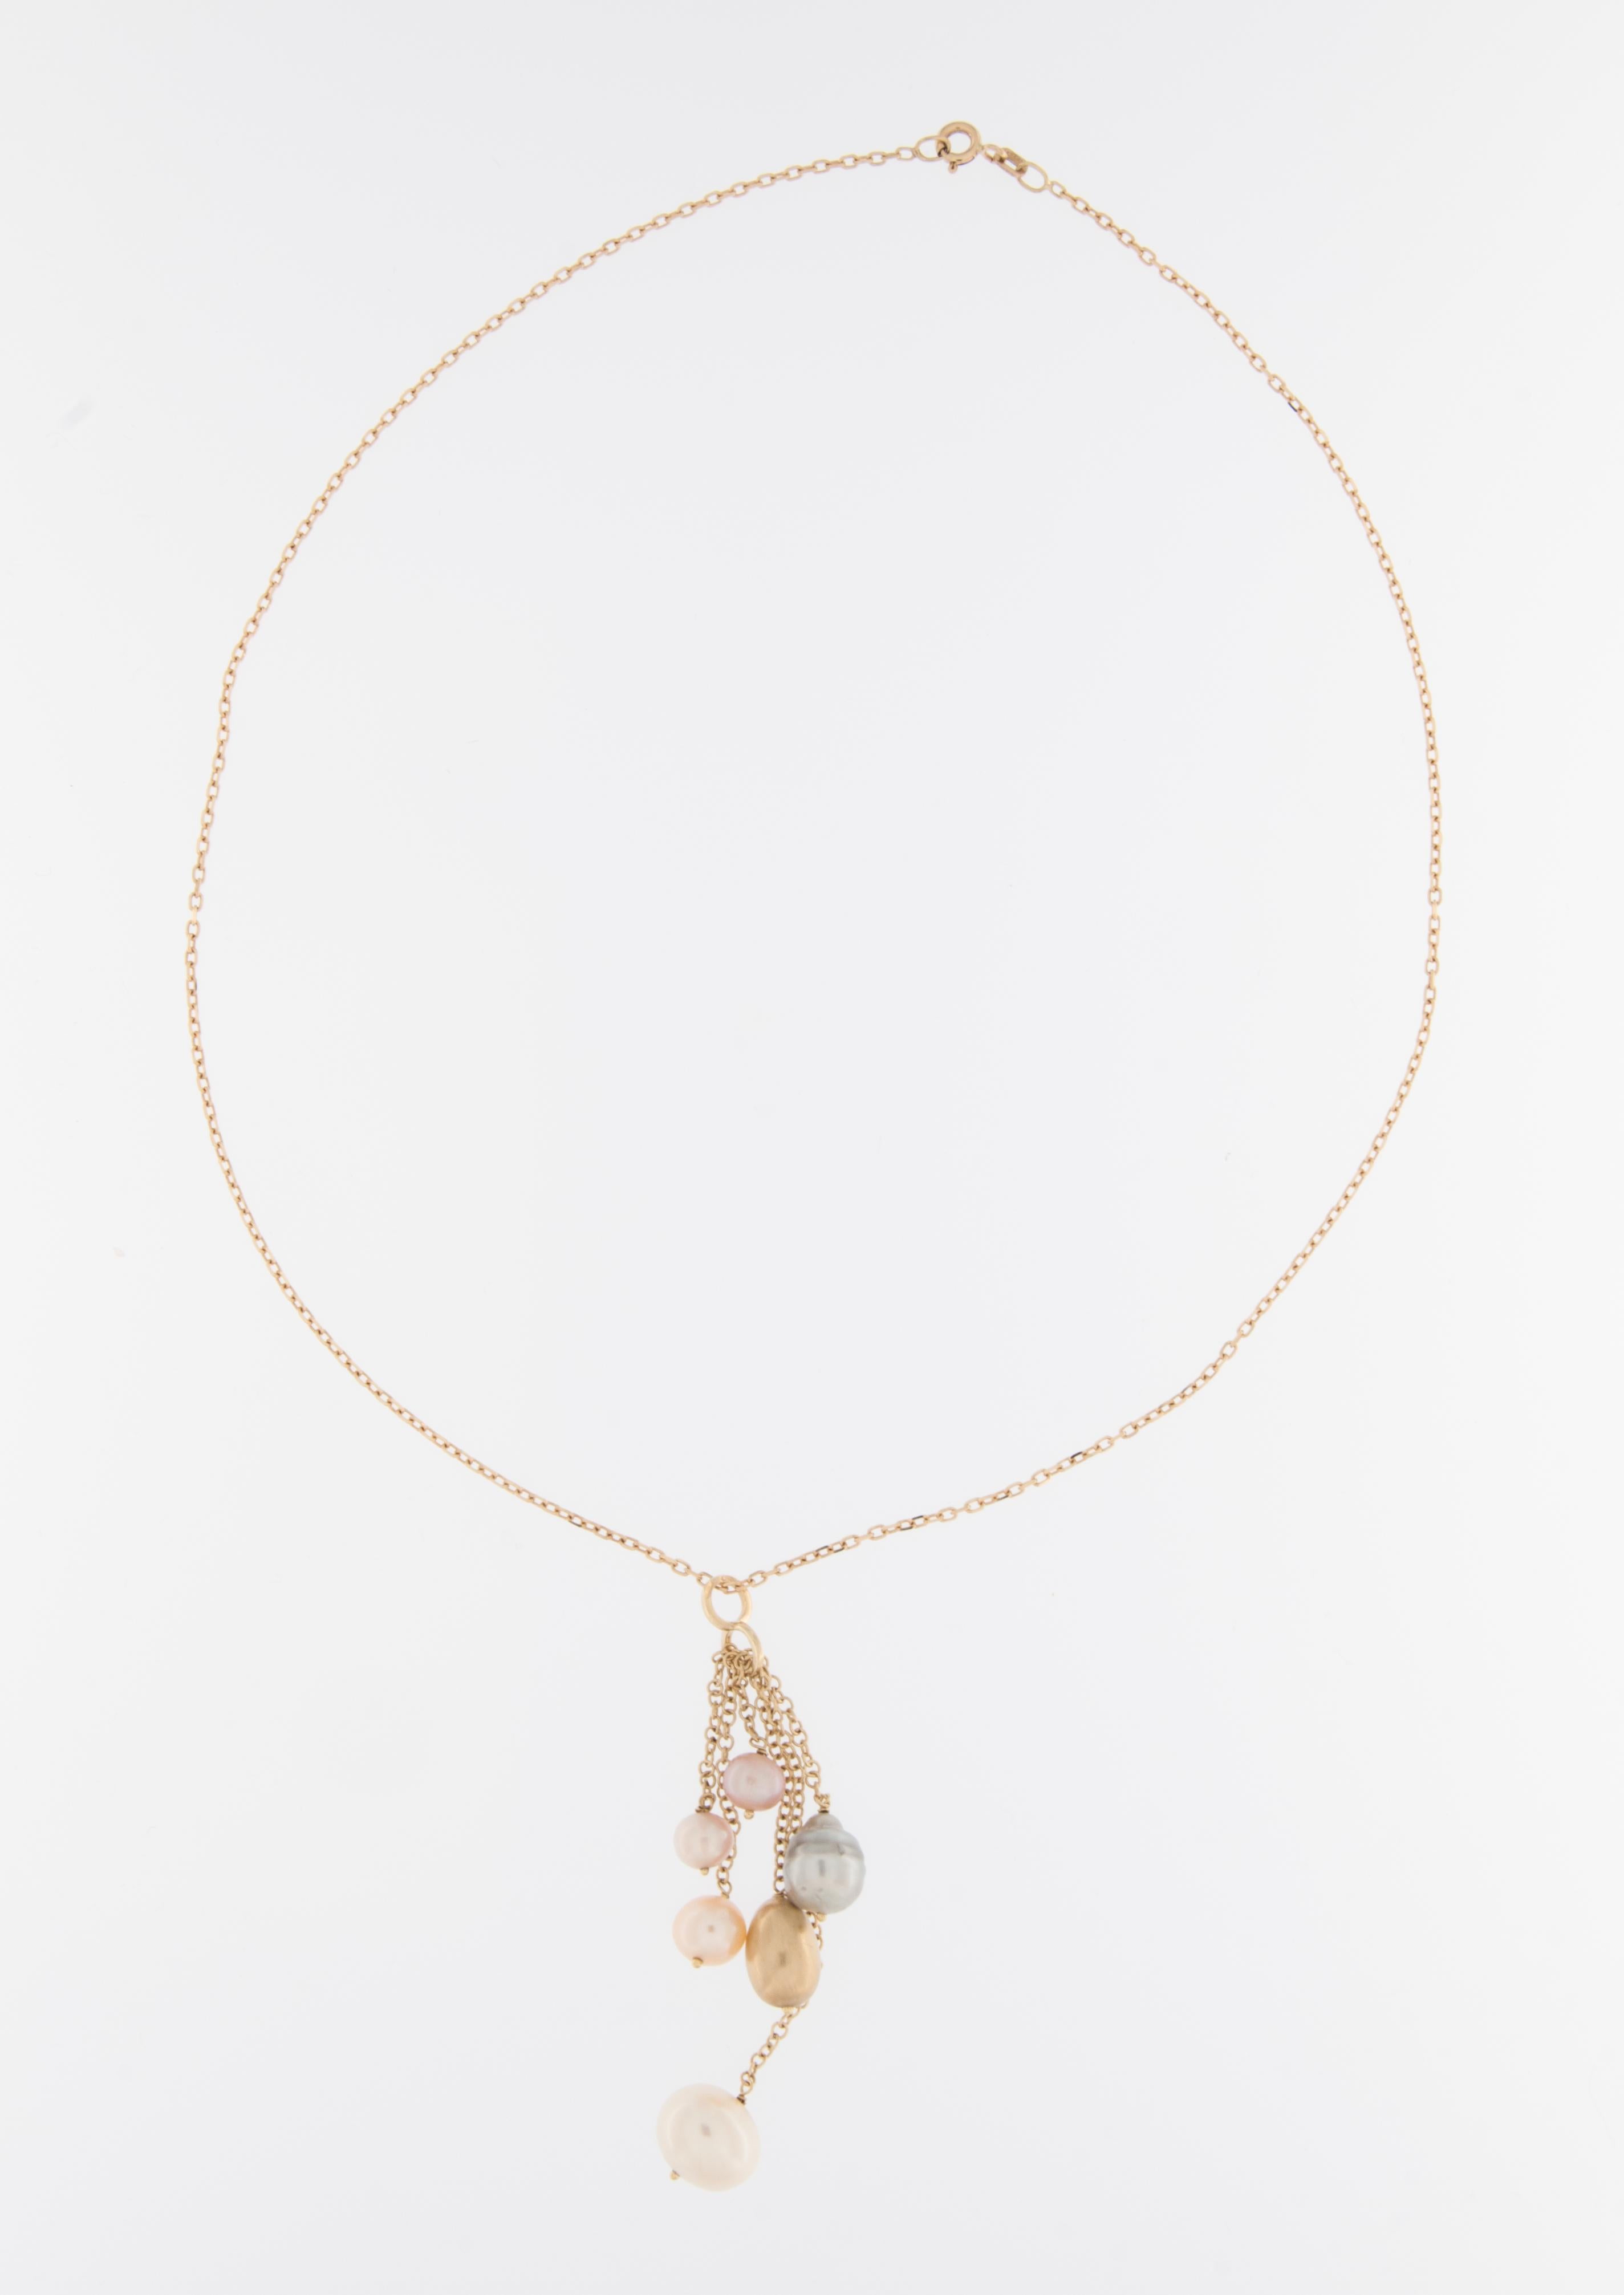 Le collier moderne italien en or jaune 18 carats avec perles est un bijou époustouflant qui allie élégance classique et design contemporain. 

Ce collier est fabriqué en or jaune 18 carats de haute qualité, connu pour sa durabilité et son aspect